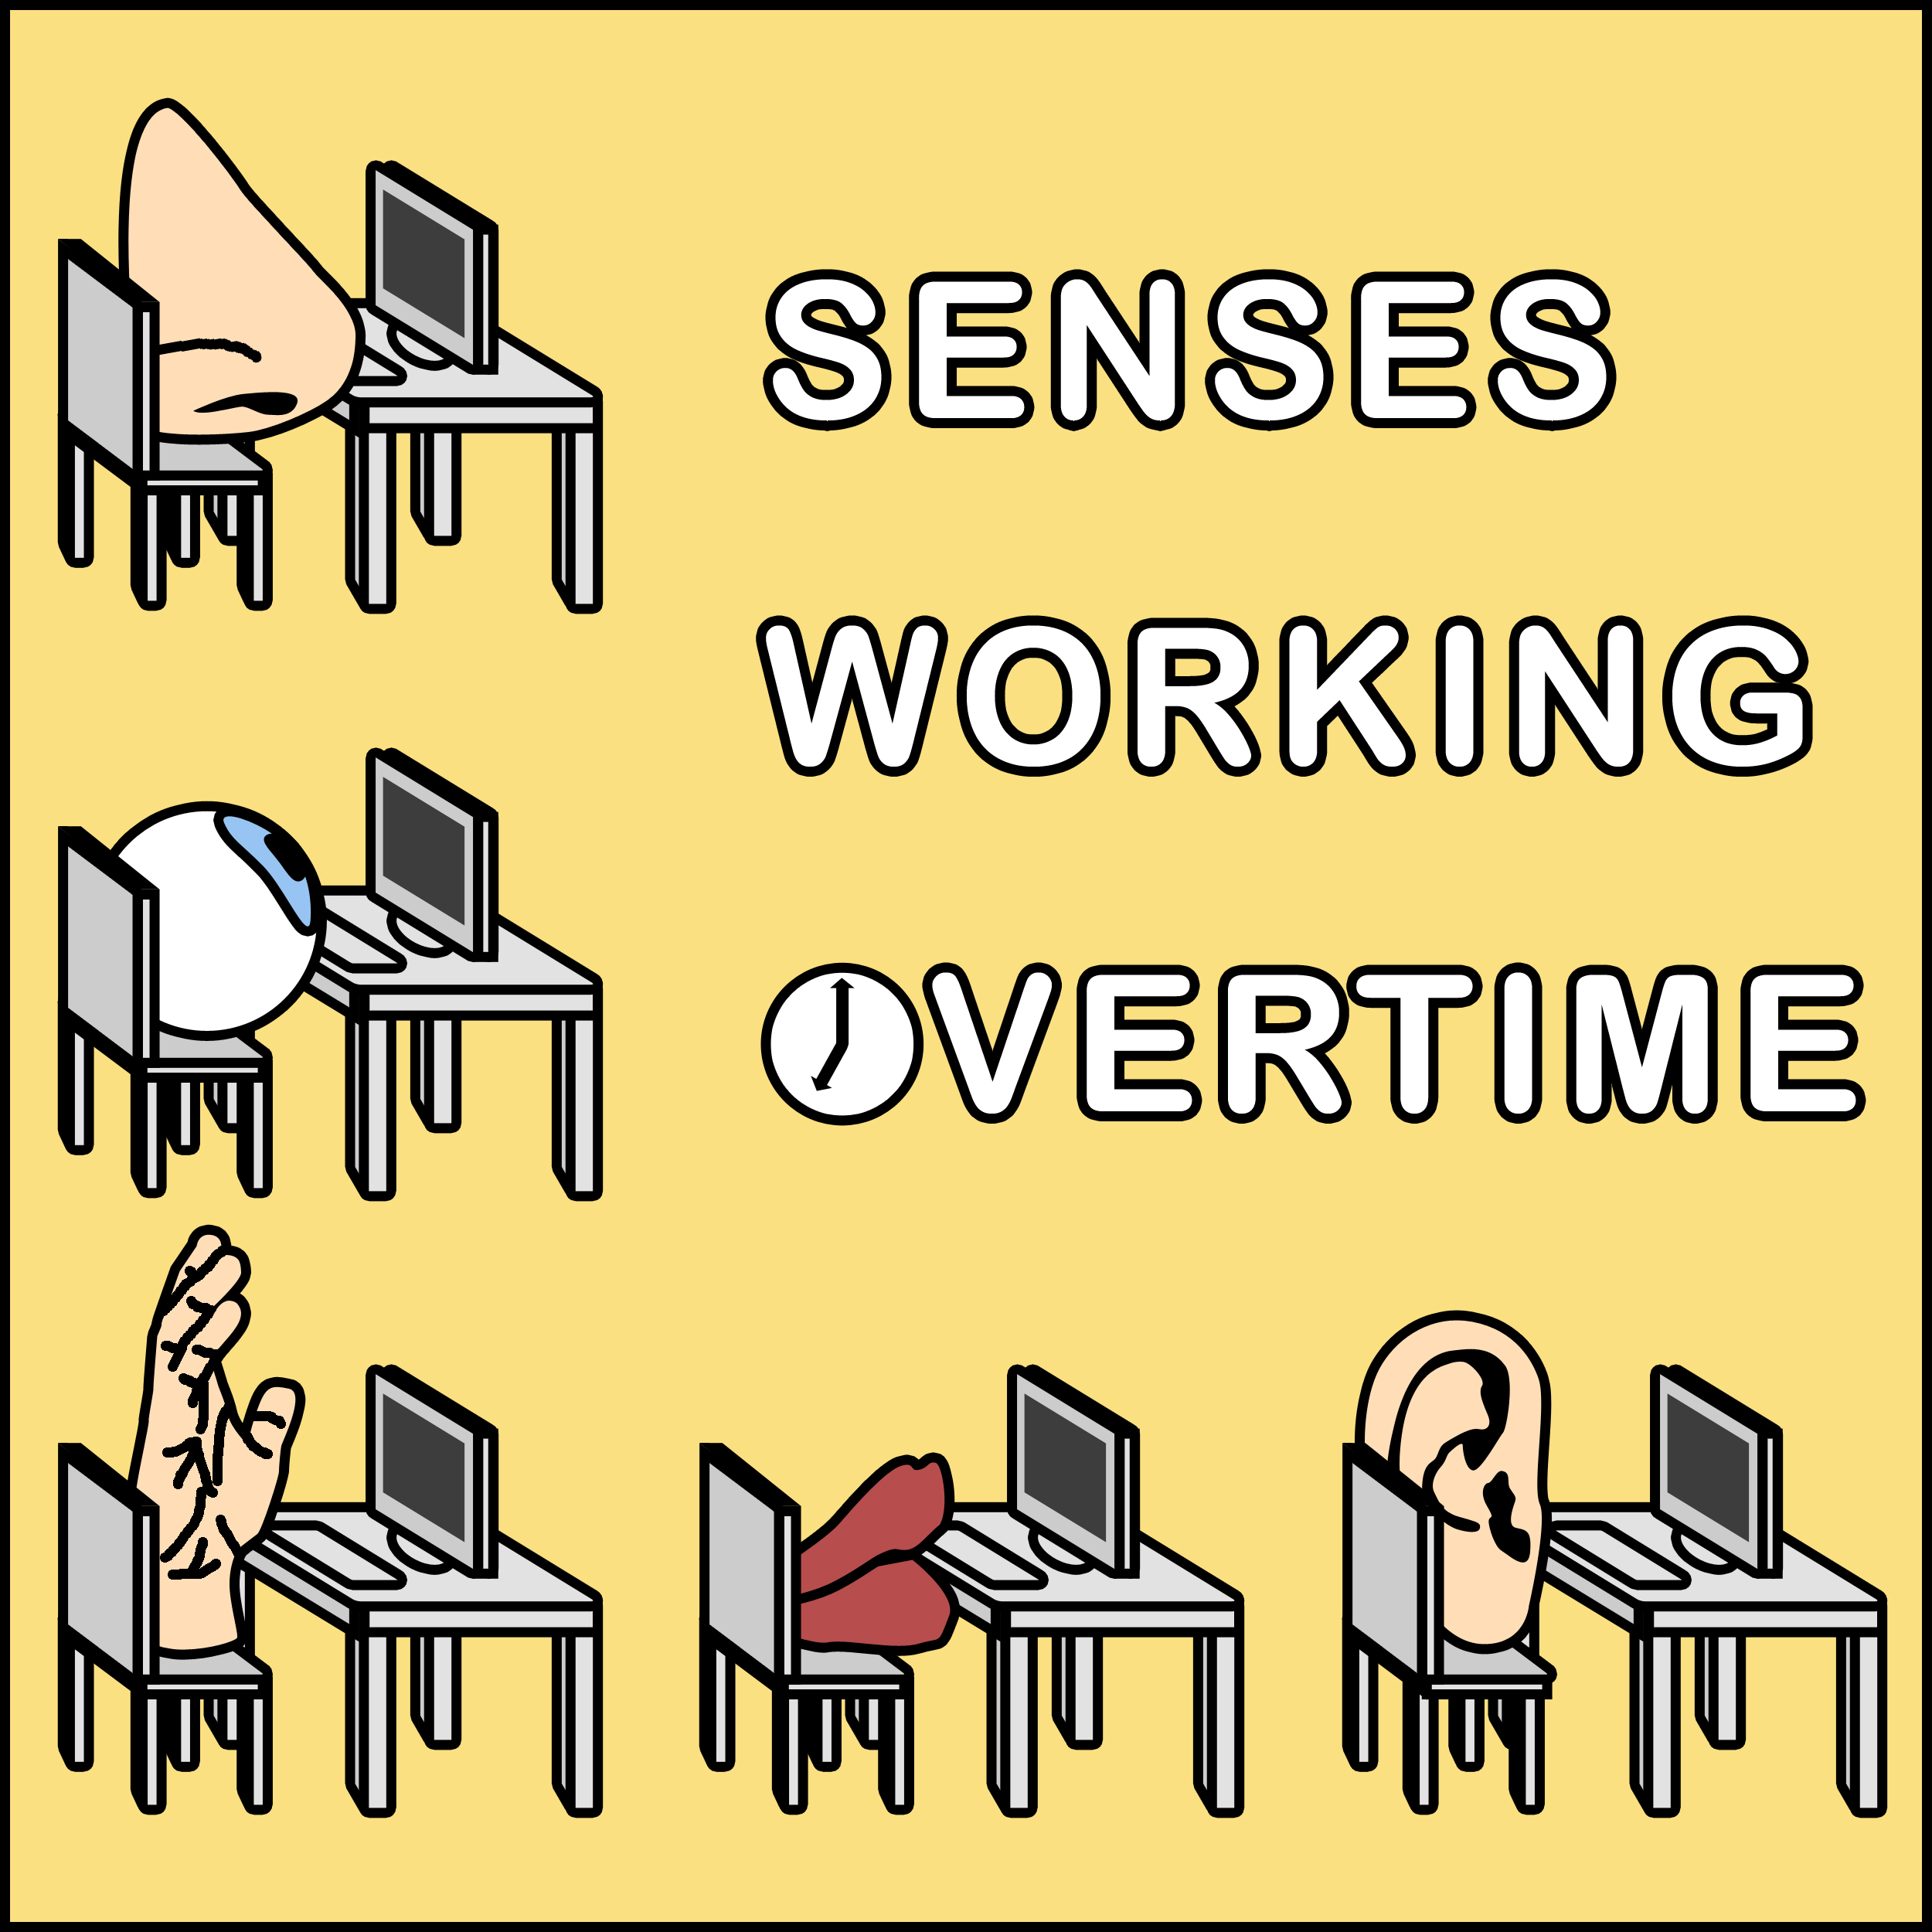 "Senses Working Overtime"